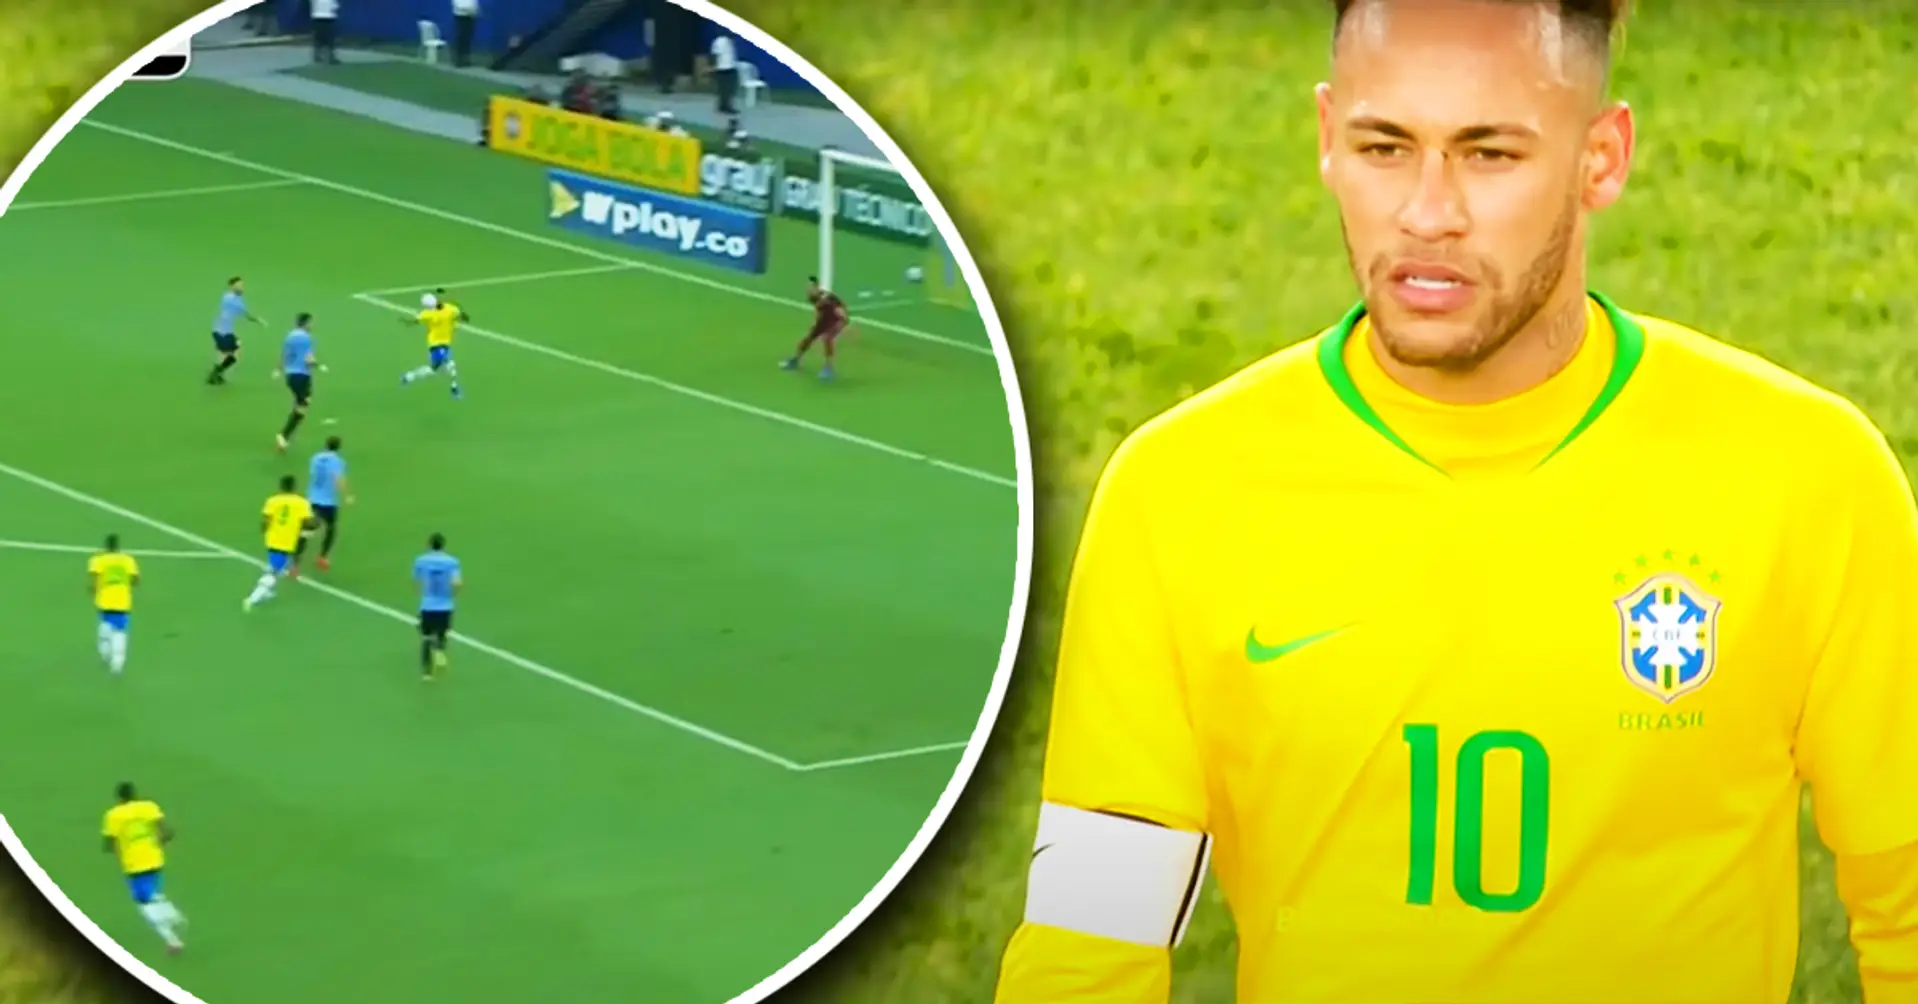 La magie brésilienne: Neymar humilie 3 joueurs uruguayens et marque un but somptueux